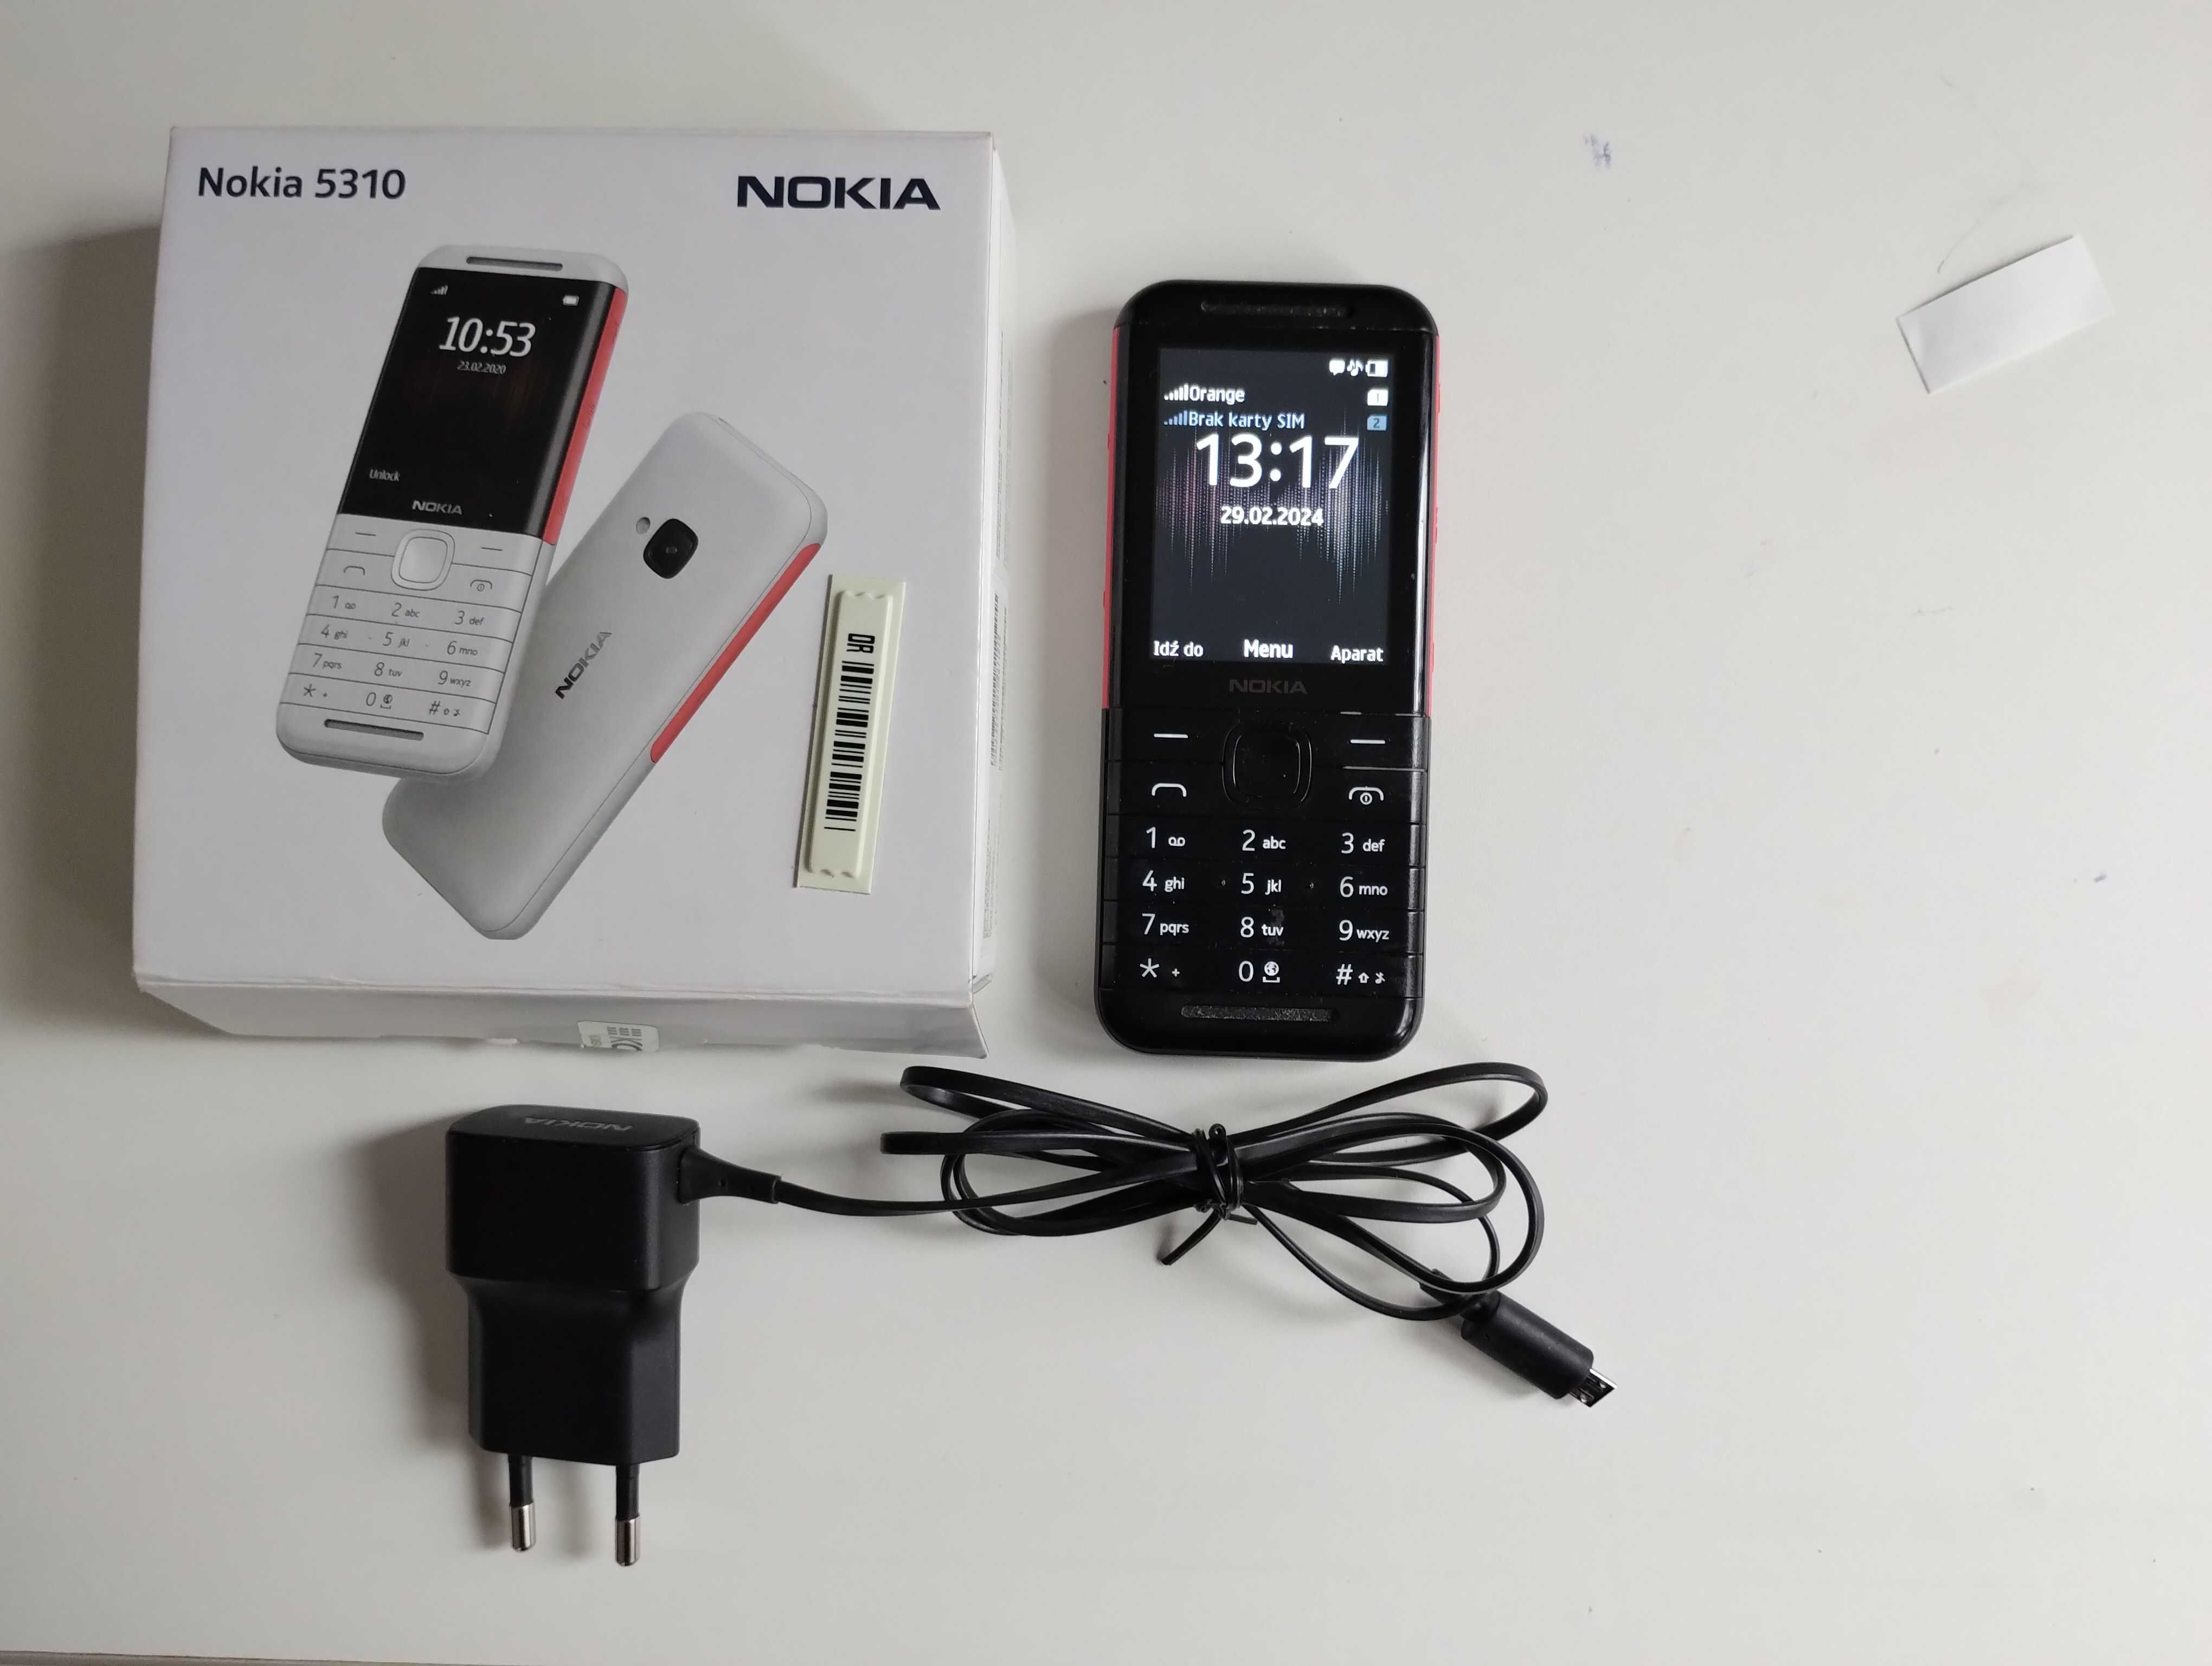 Nokia 5310 pudelko, ładowarka, instrukcja, dowód zakupu